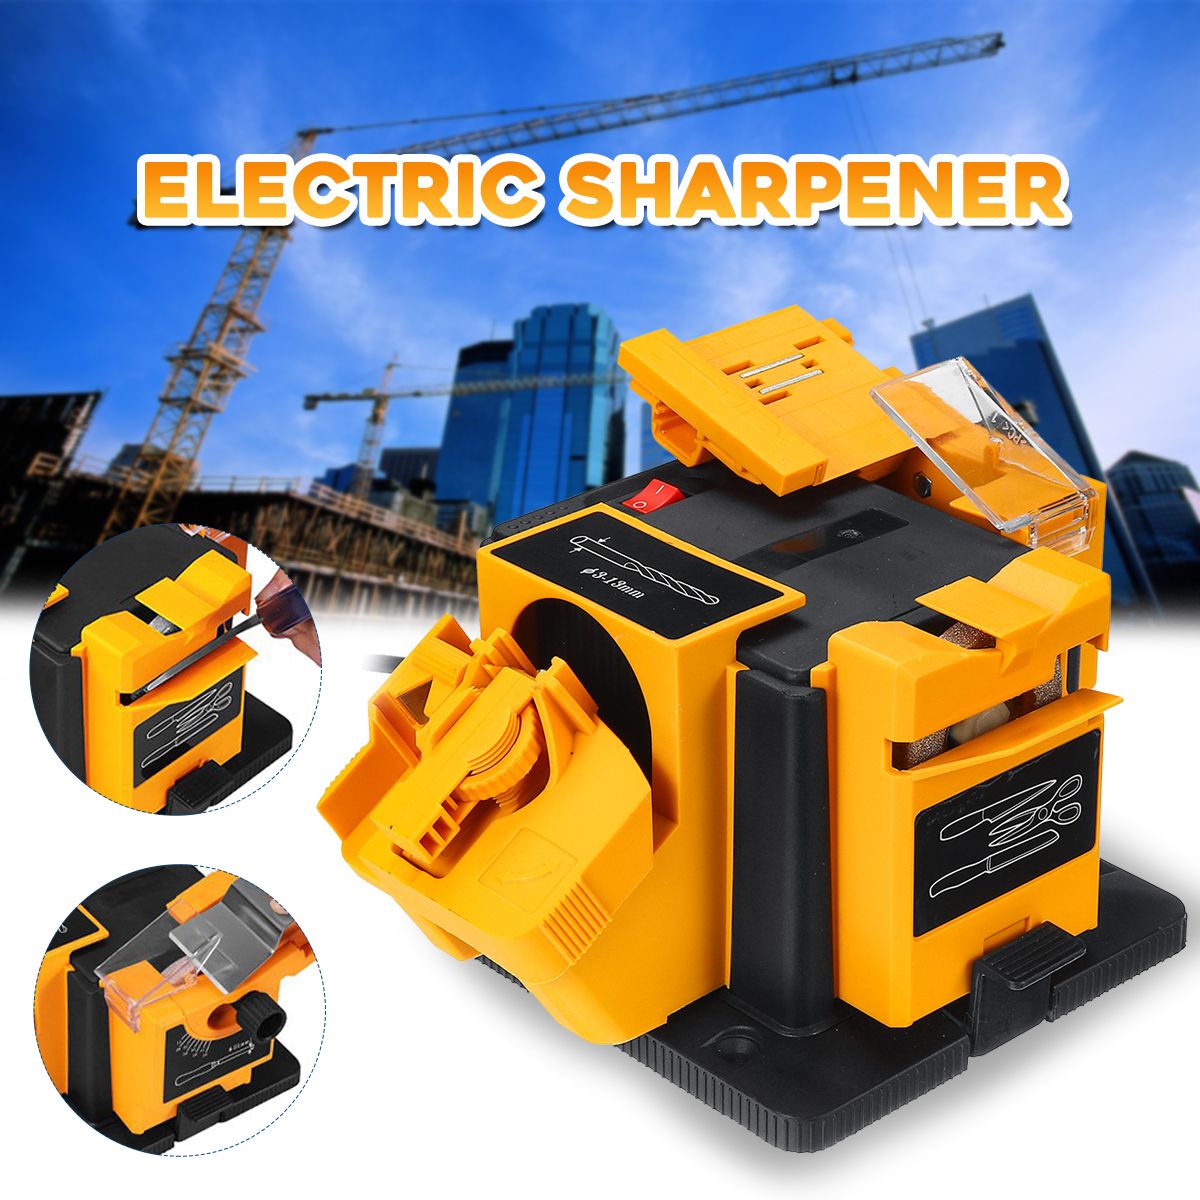 230V-96W-Electric-Sharpener-Electric-Grinder-Multifunction-Knife-Sharpener-Grinding-Drill-Tool-for-G-1592344